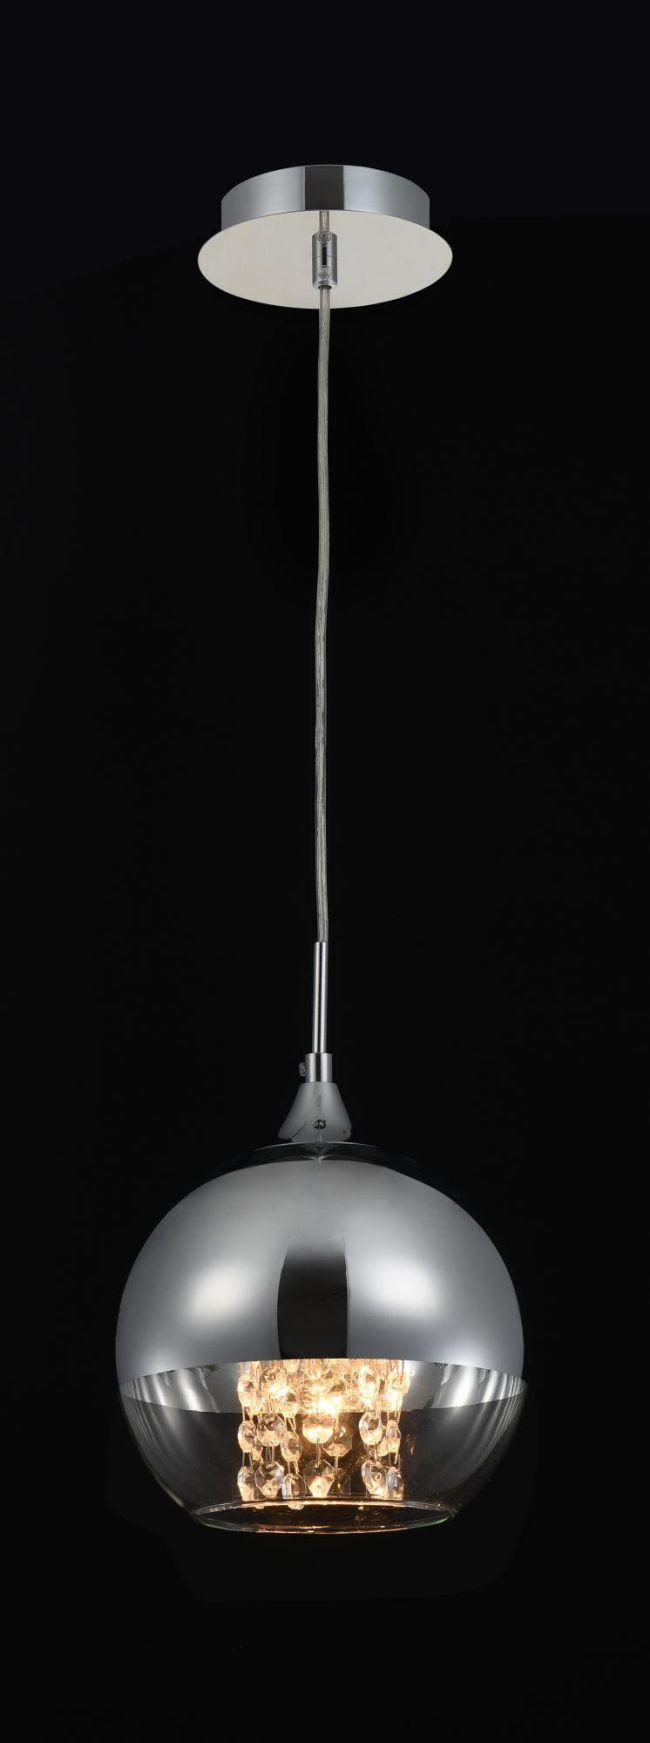 szklana lampa kula z srebrnym kloszem i kryształami wiszącymi